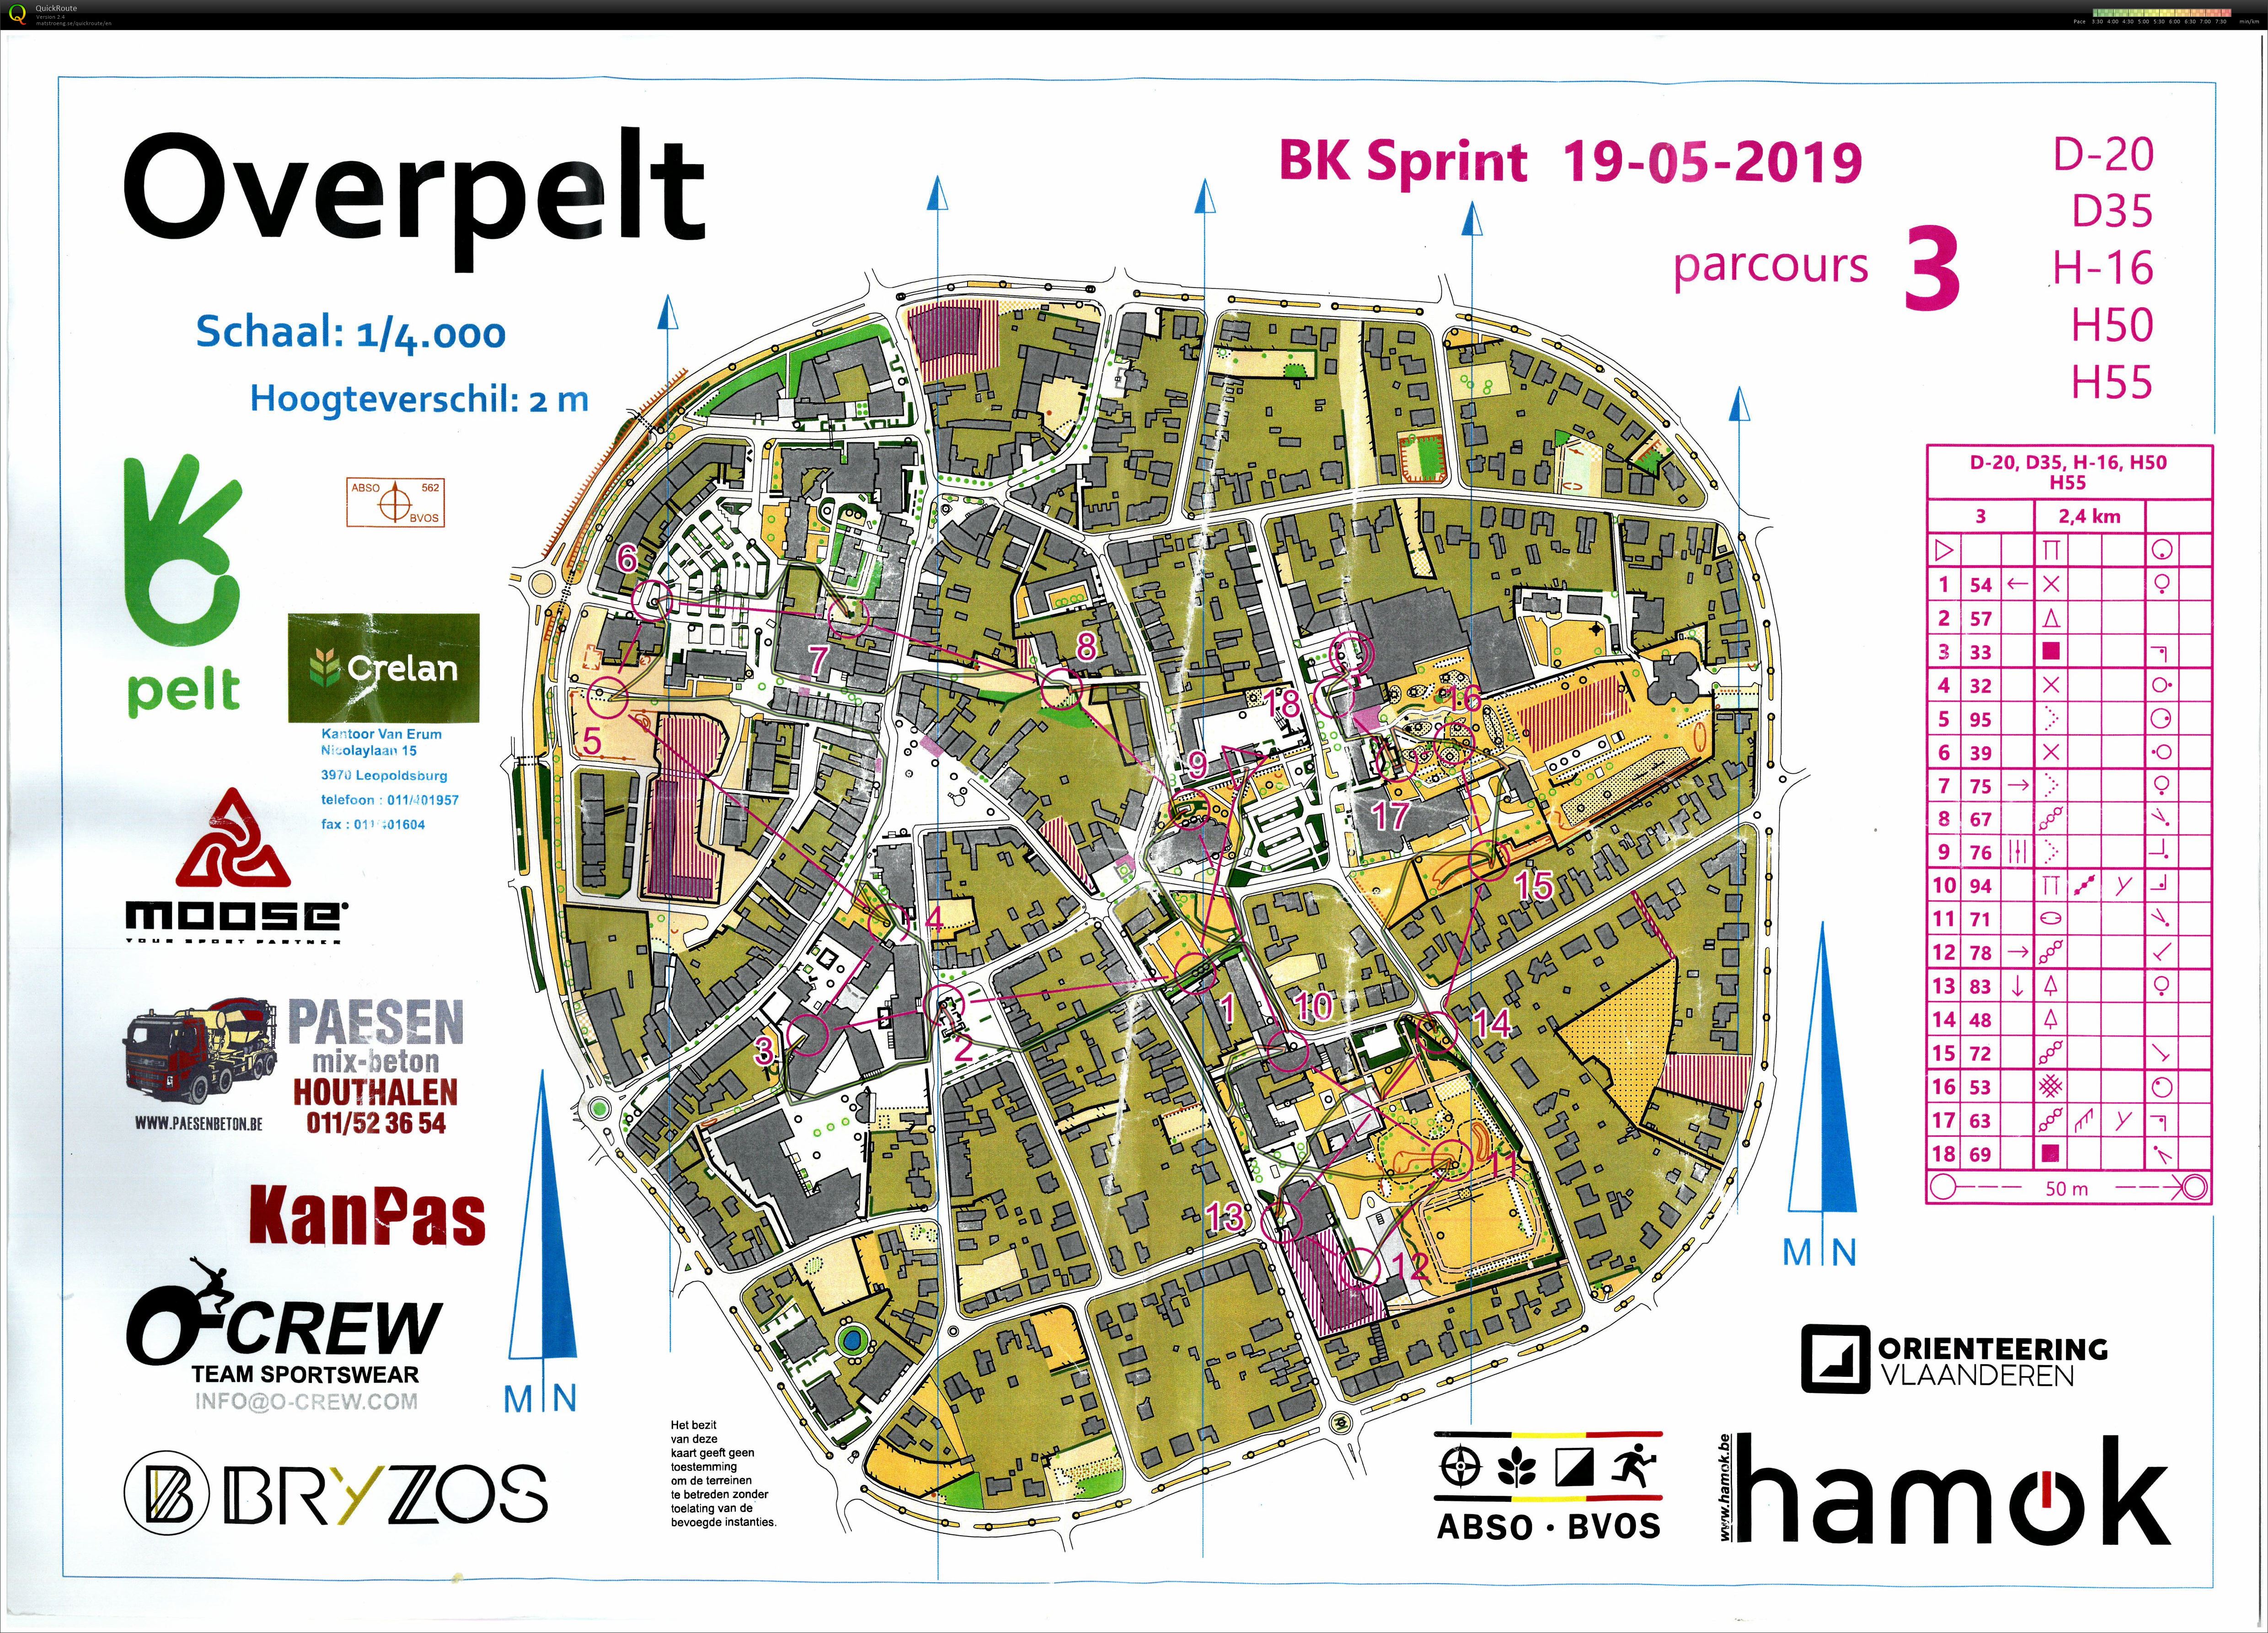 Championnat de Belgique de Sprint (19/05/2019)